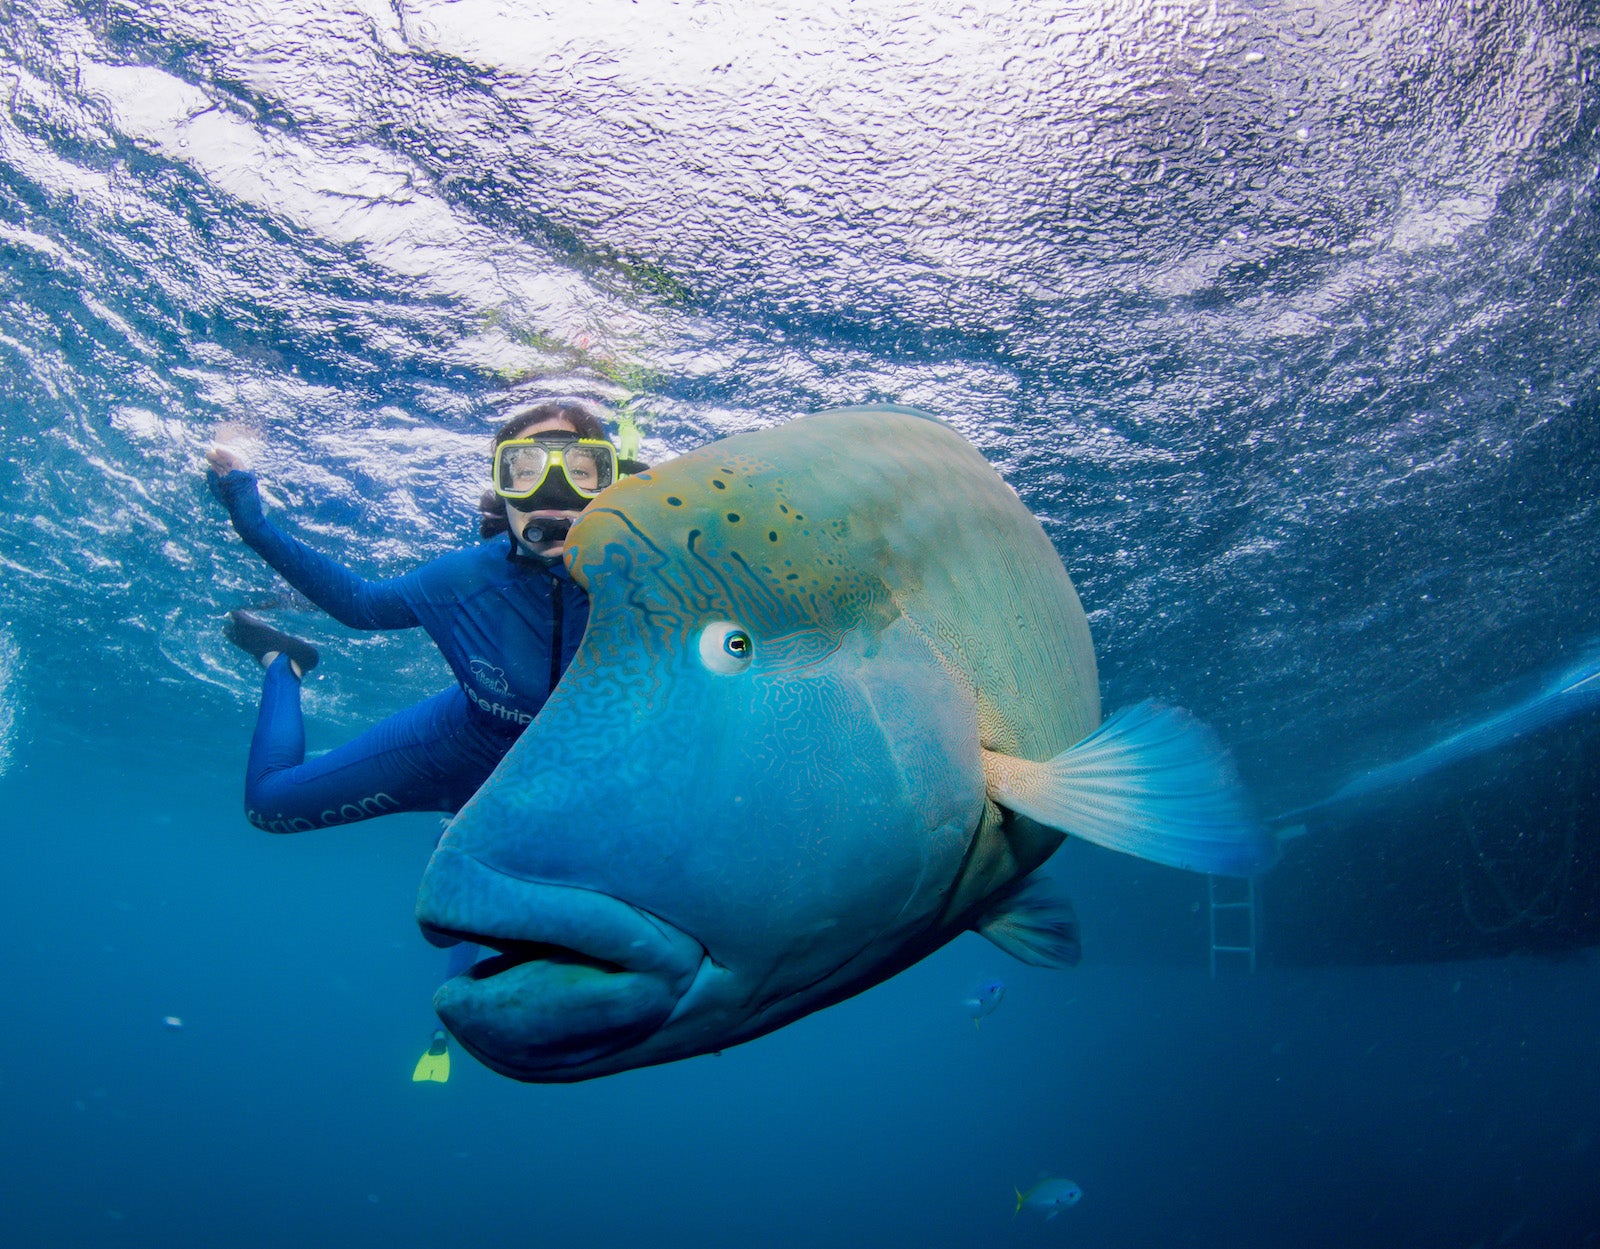 Amy Schneider dives underwater with fish